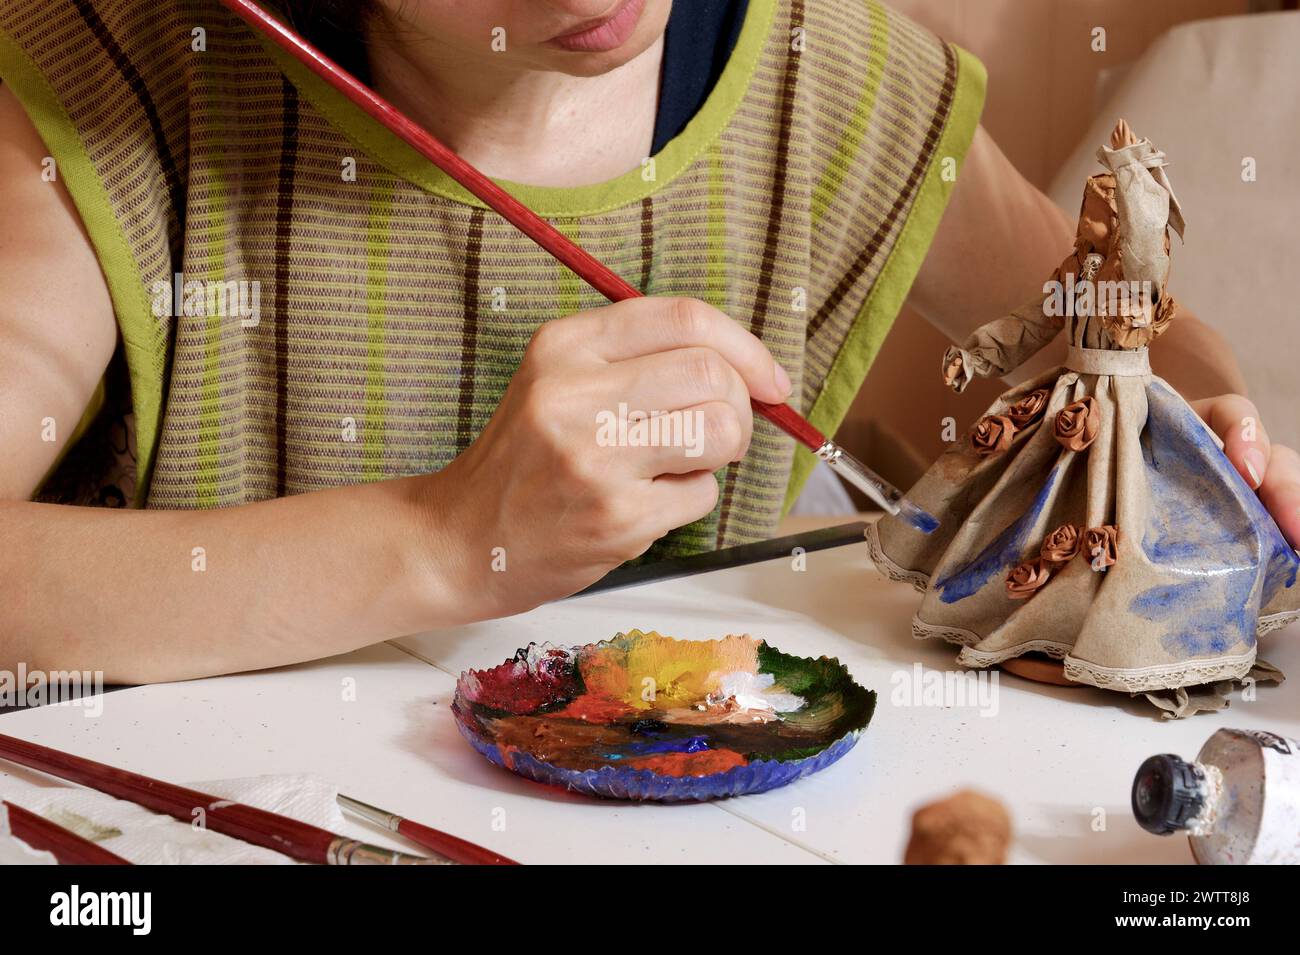 Der Künstler konzentriert sich intensiv auf das Malen einer Figur vor einem neutralen Hintergrund. Stockfoto